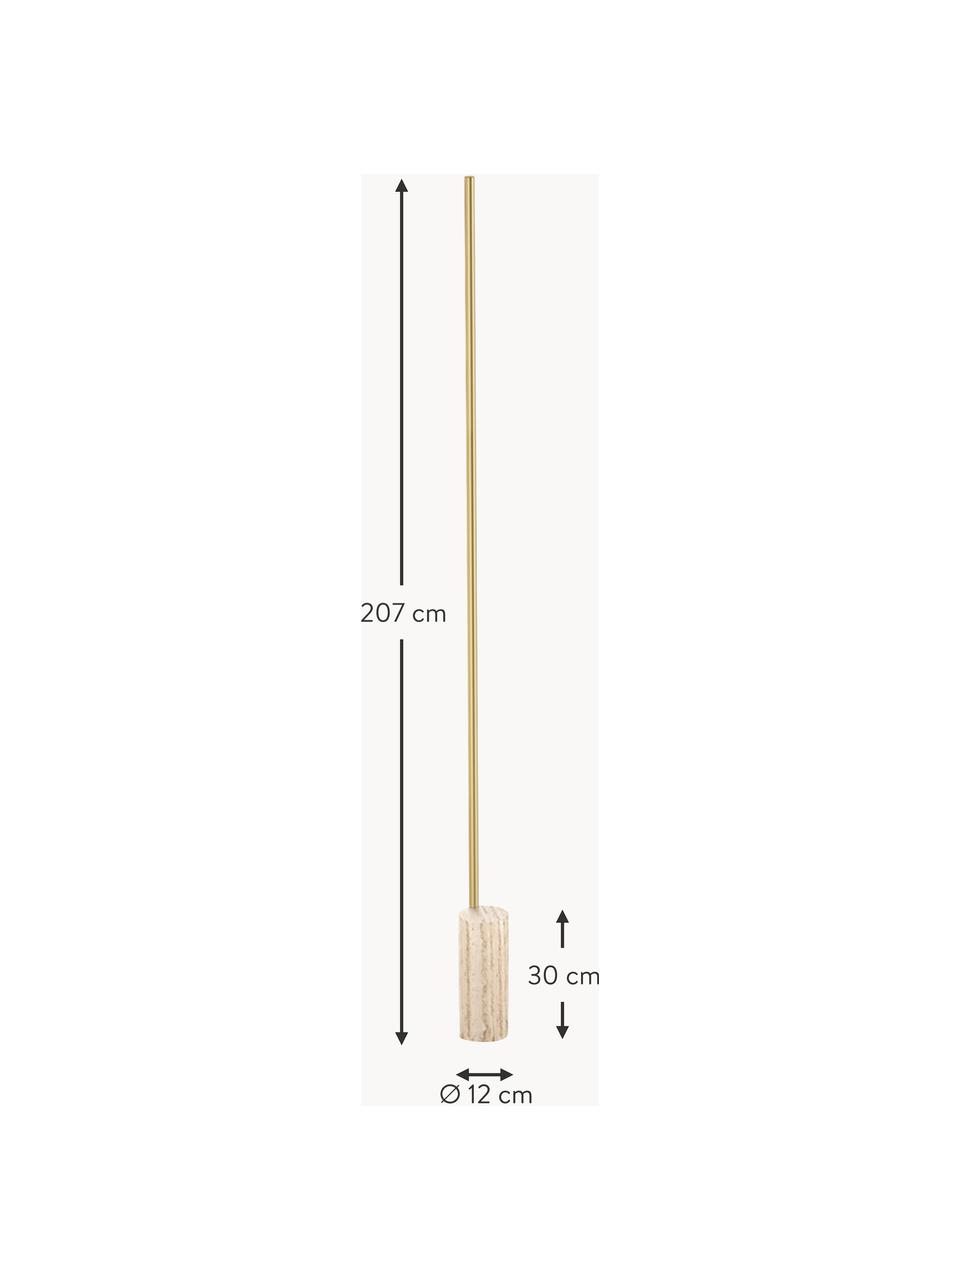 Dimbare LED vloerlamp Hilow Line met marmeren voet, Lampvoet: marmer, Goudkleurig, beige, gemarmerd, H 207 cm